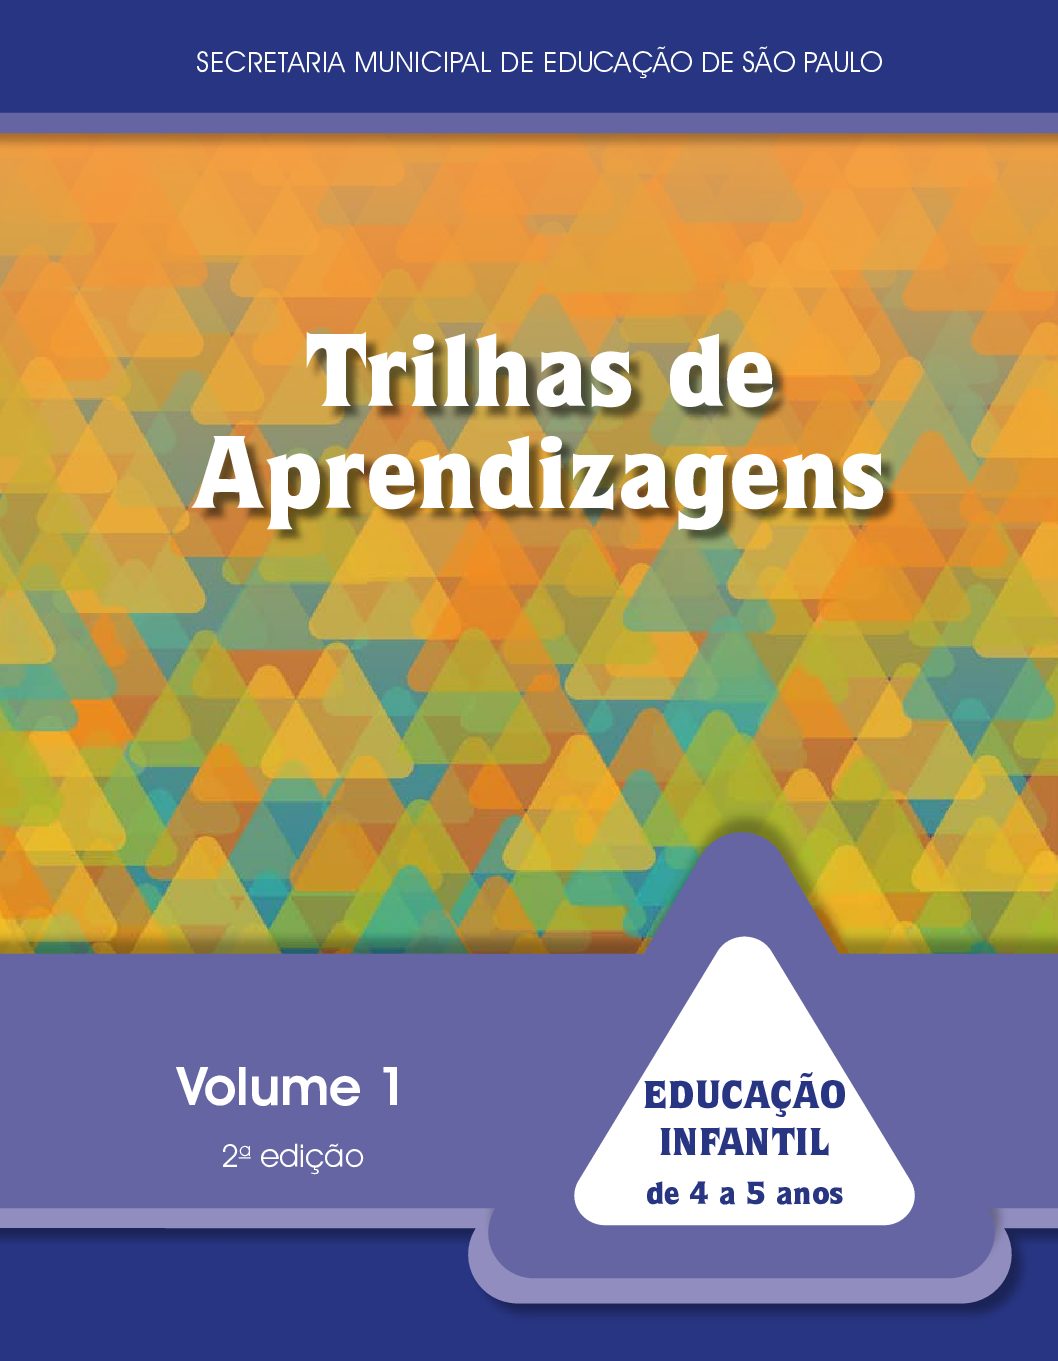 Publicação com orientações para a realização de atividades interativas e brincadeiras crianças de 4 a 5 anos. 2ª edição. Volume 1.